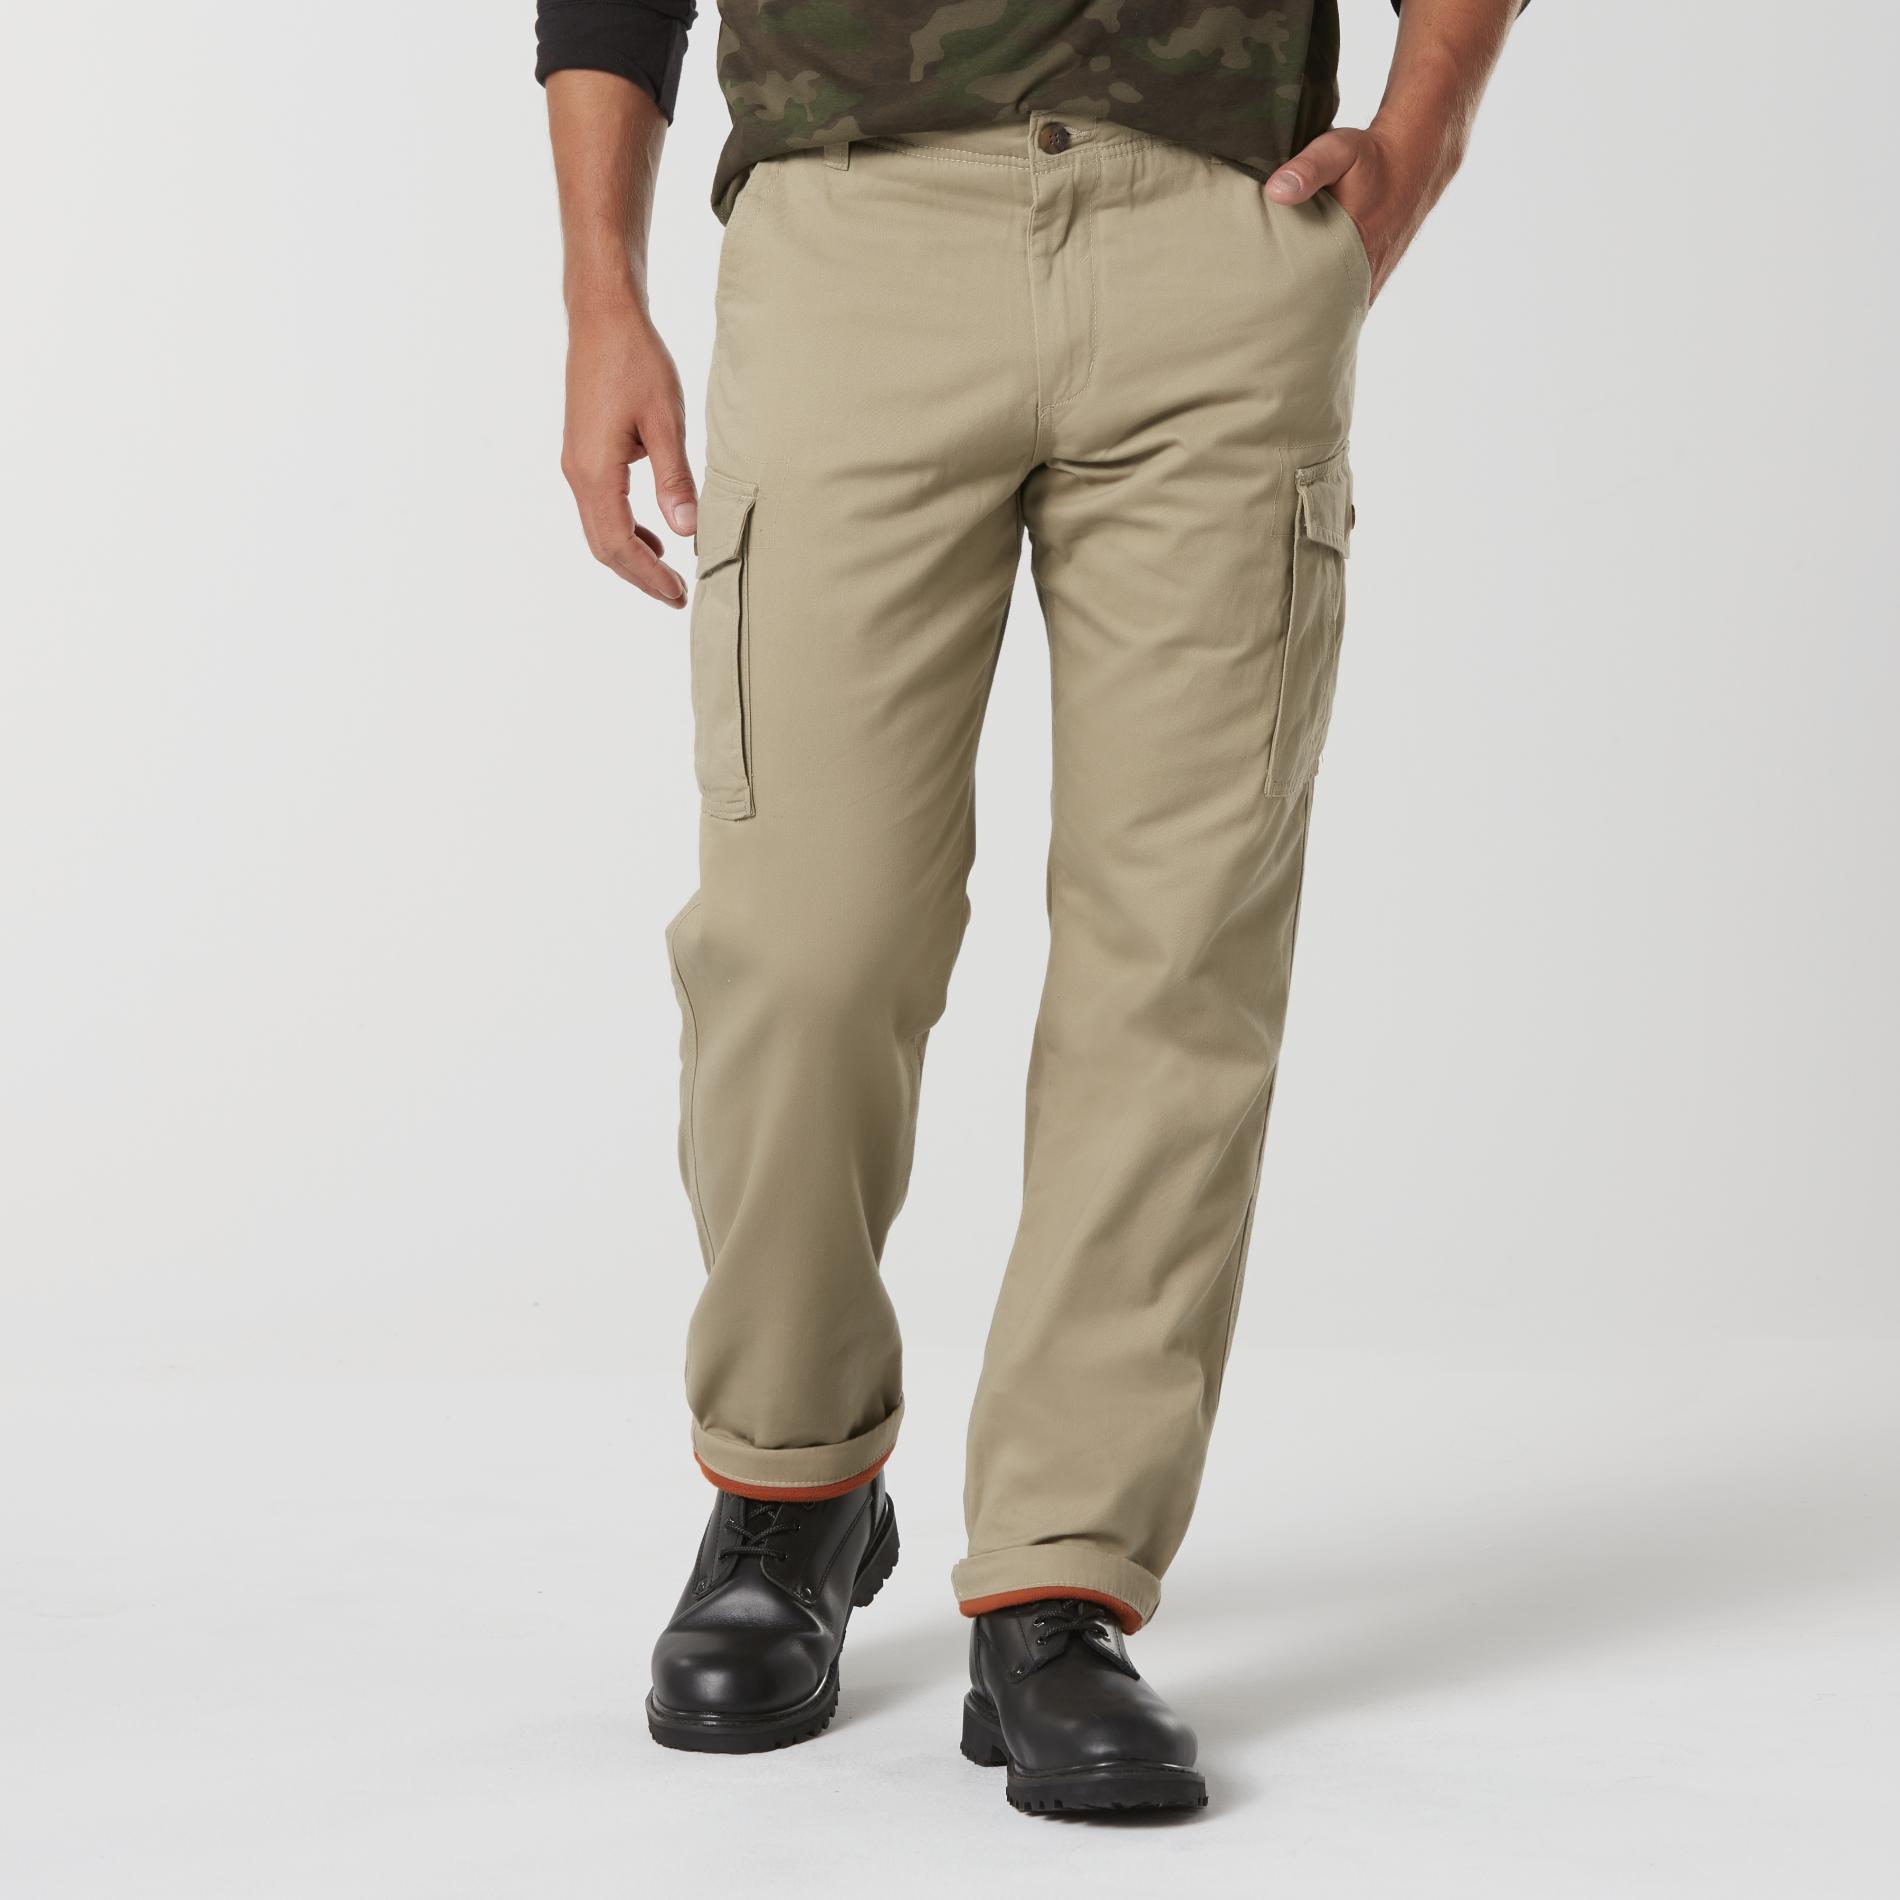 Northwest Territory Men's Fleece-Lined Cargo Pants | Shop Your Way ...